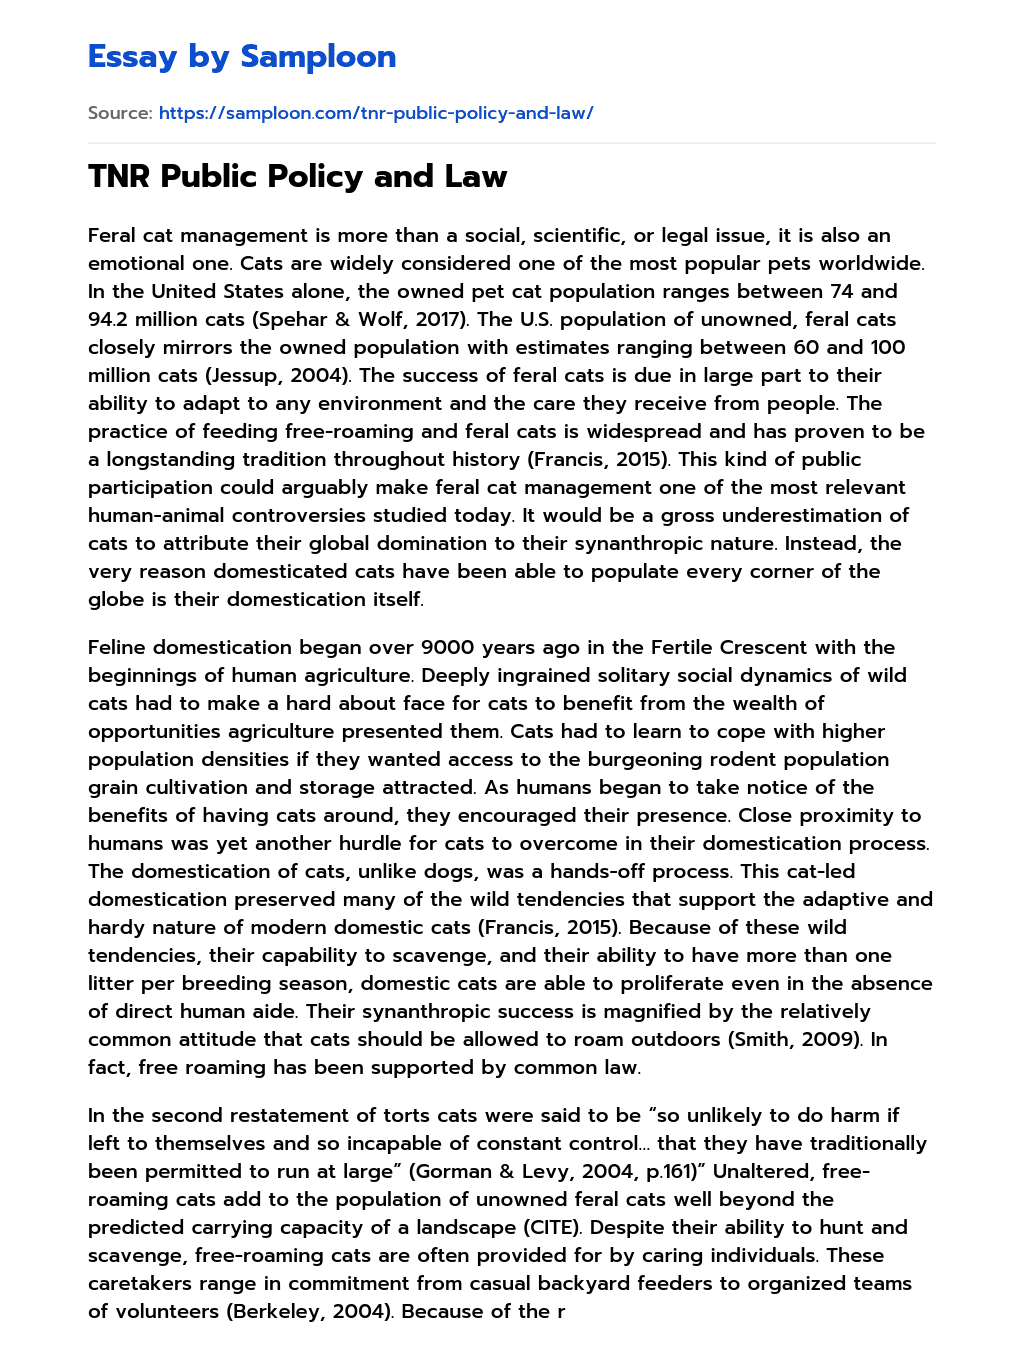 TNR Public Policy and Law essay